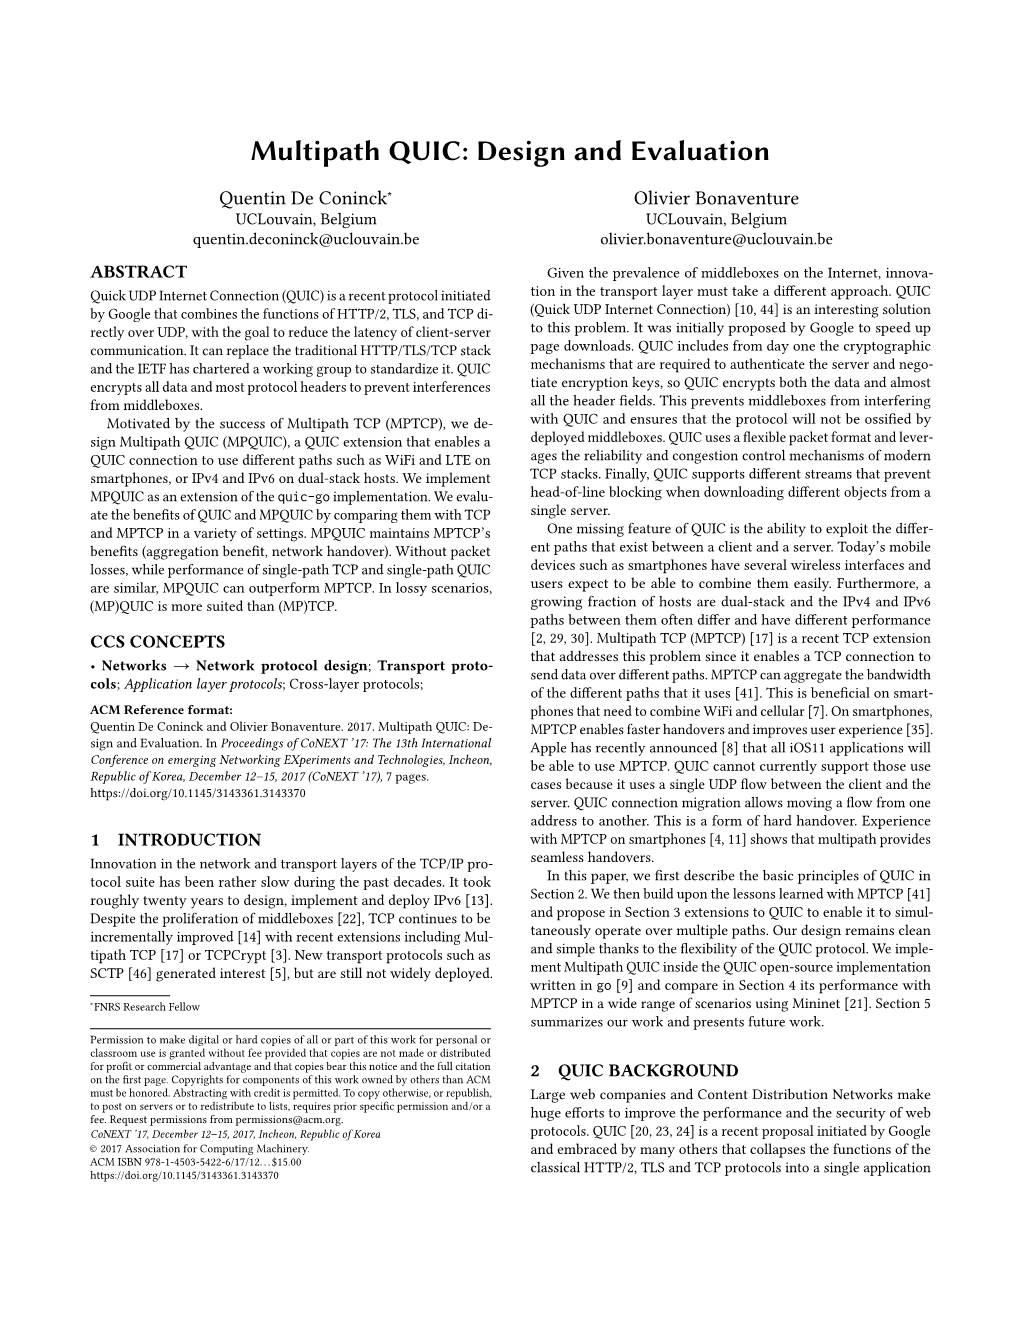 Conext 2017 Paper “Multipath QUIC: Design and Evaluation”